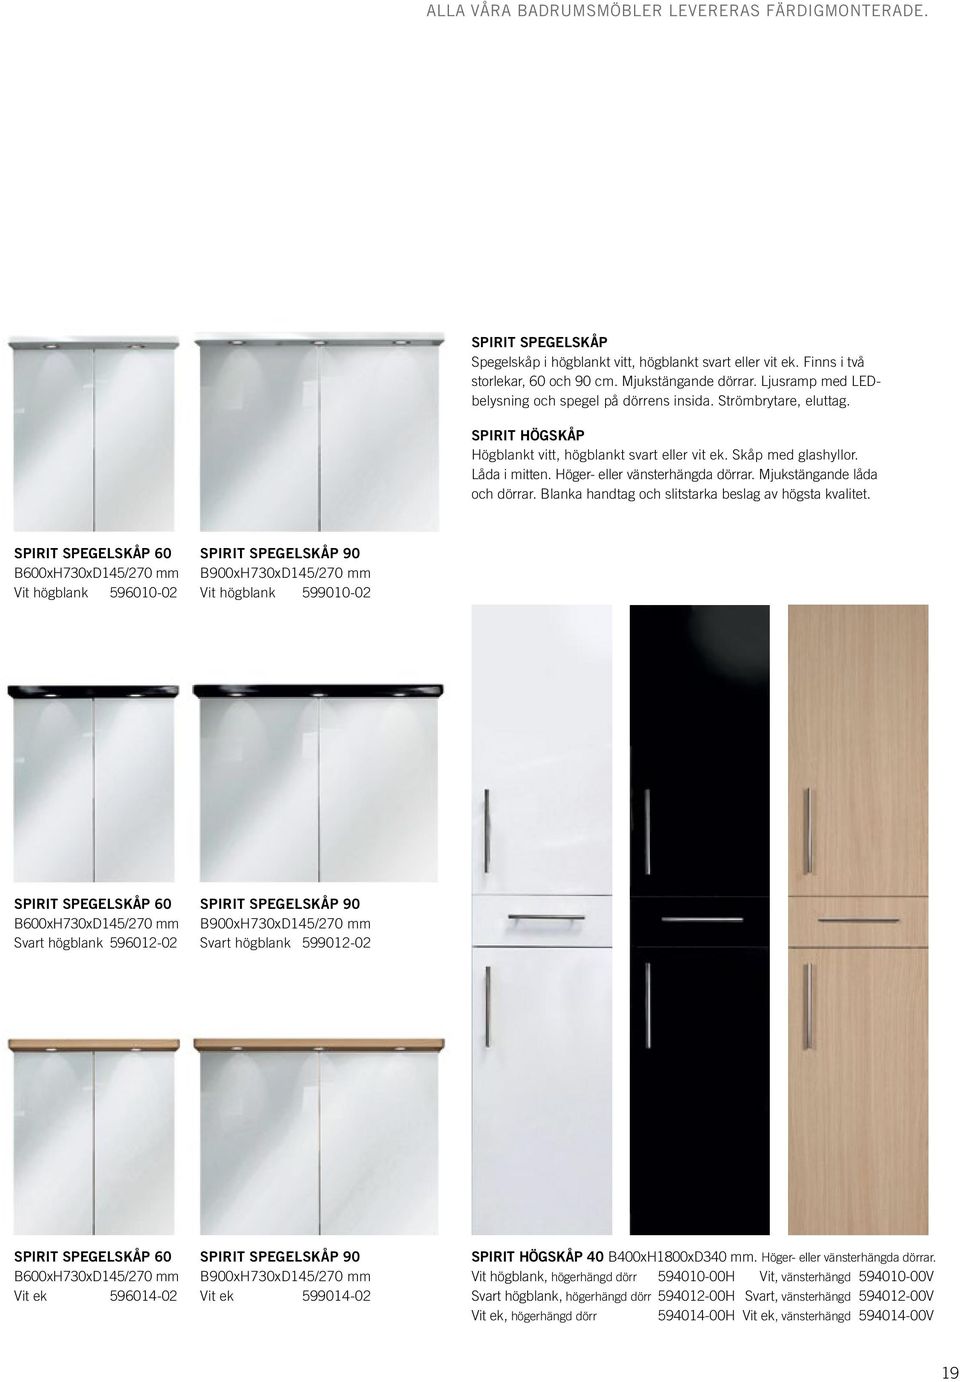 Höger- eller vänsterhängda dörrar. Mjukstängande låda och dörrar. Blanka handtag och slitstarka beslag av högsta kvalitet.